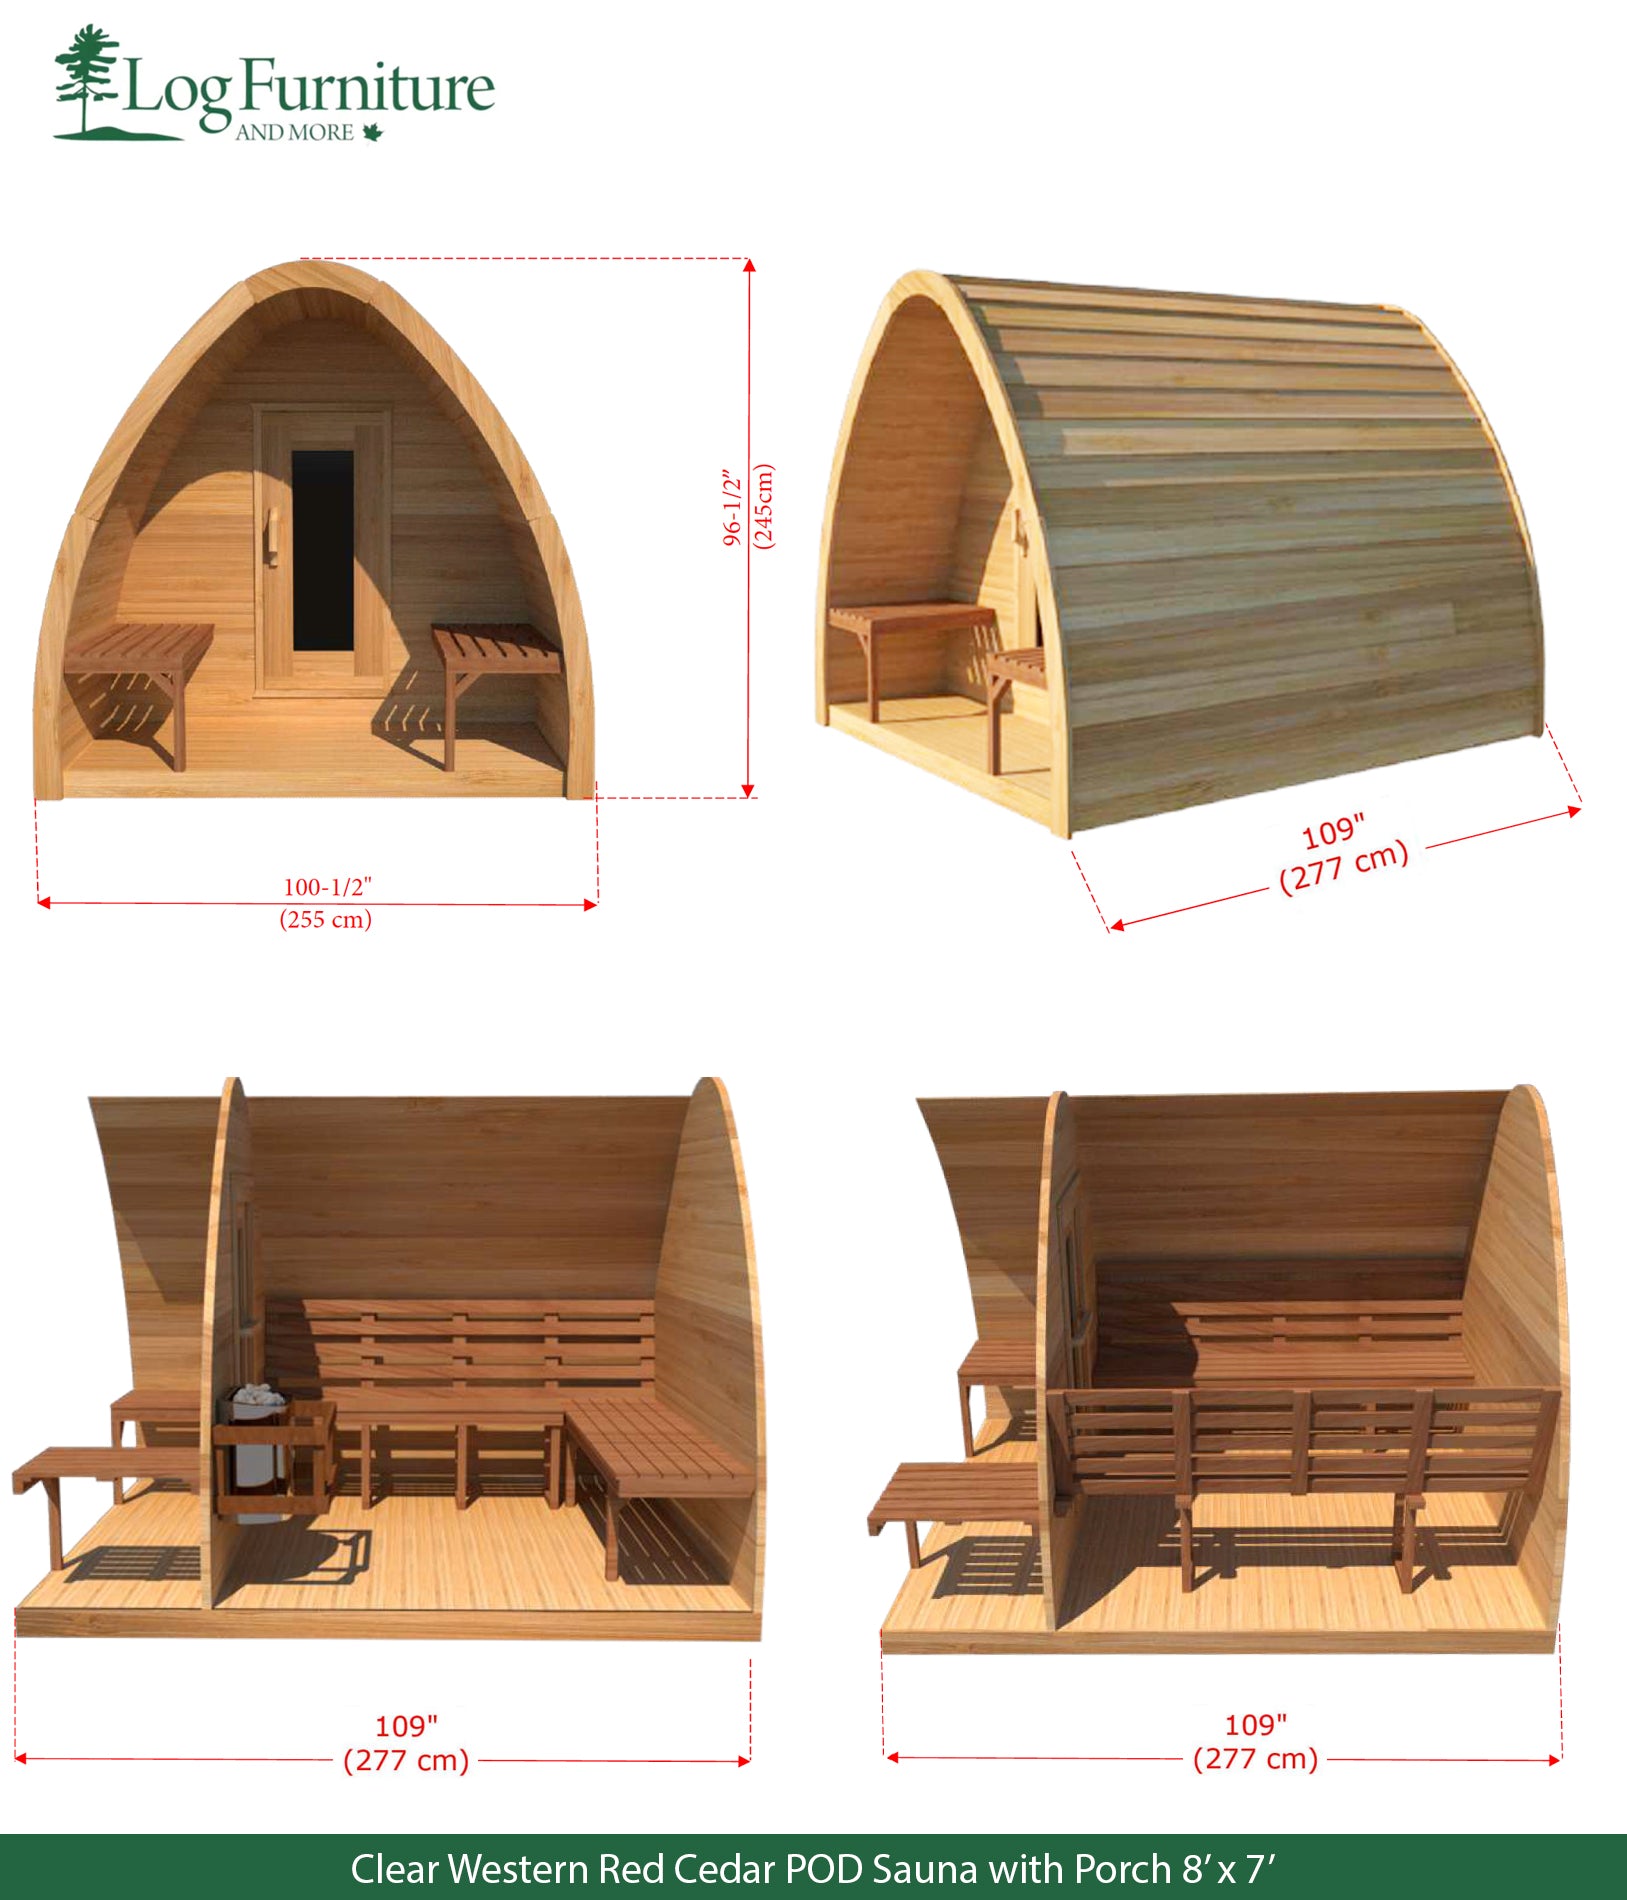 Clear Western Red Cedar POD Sauna with Porch 8' x 7'